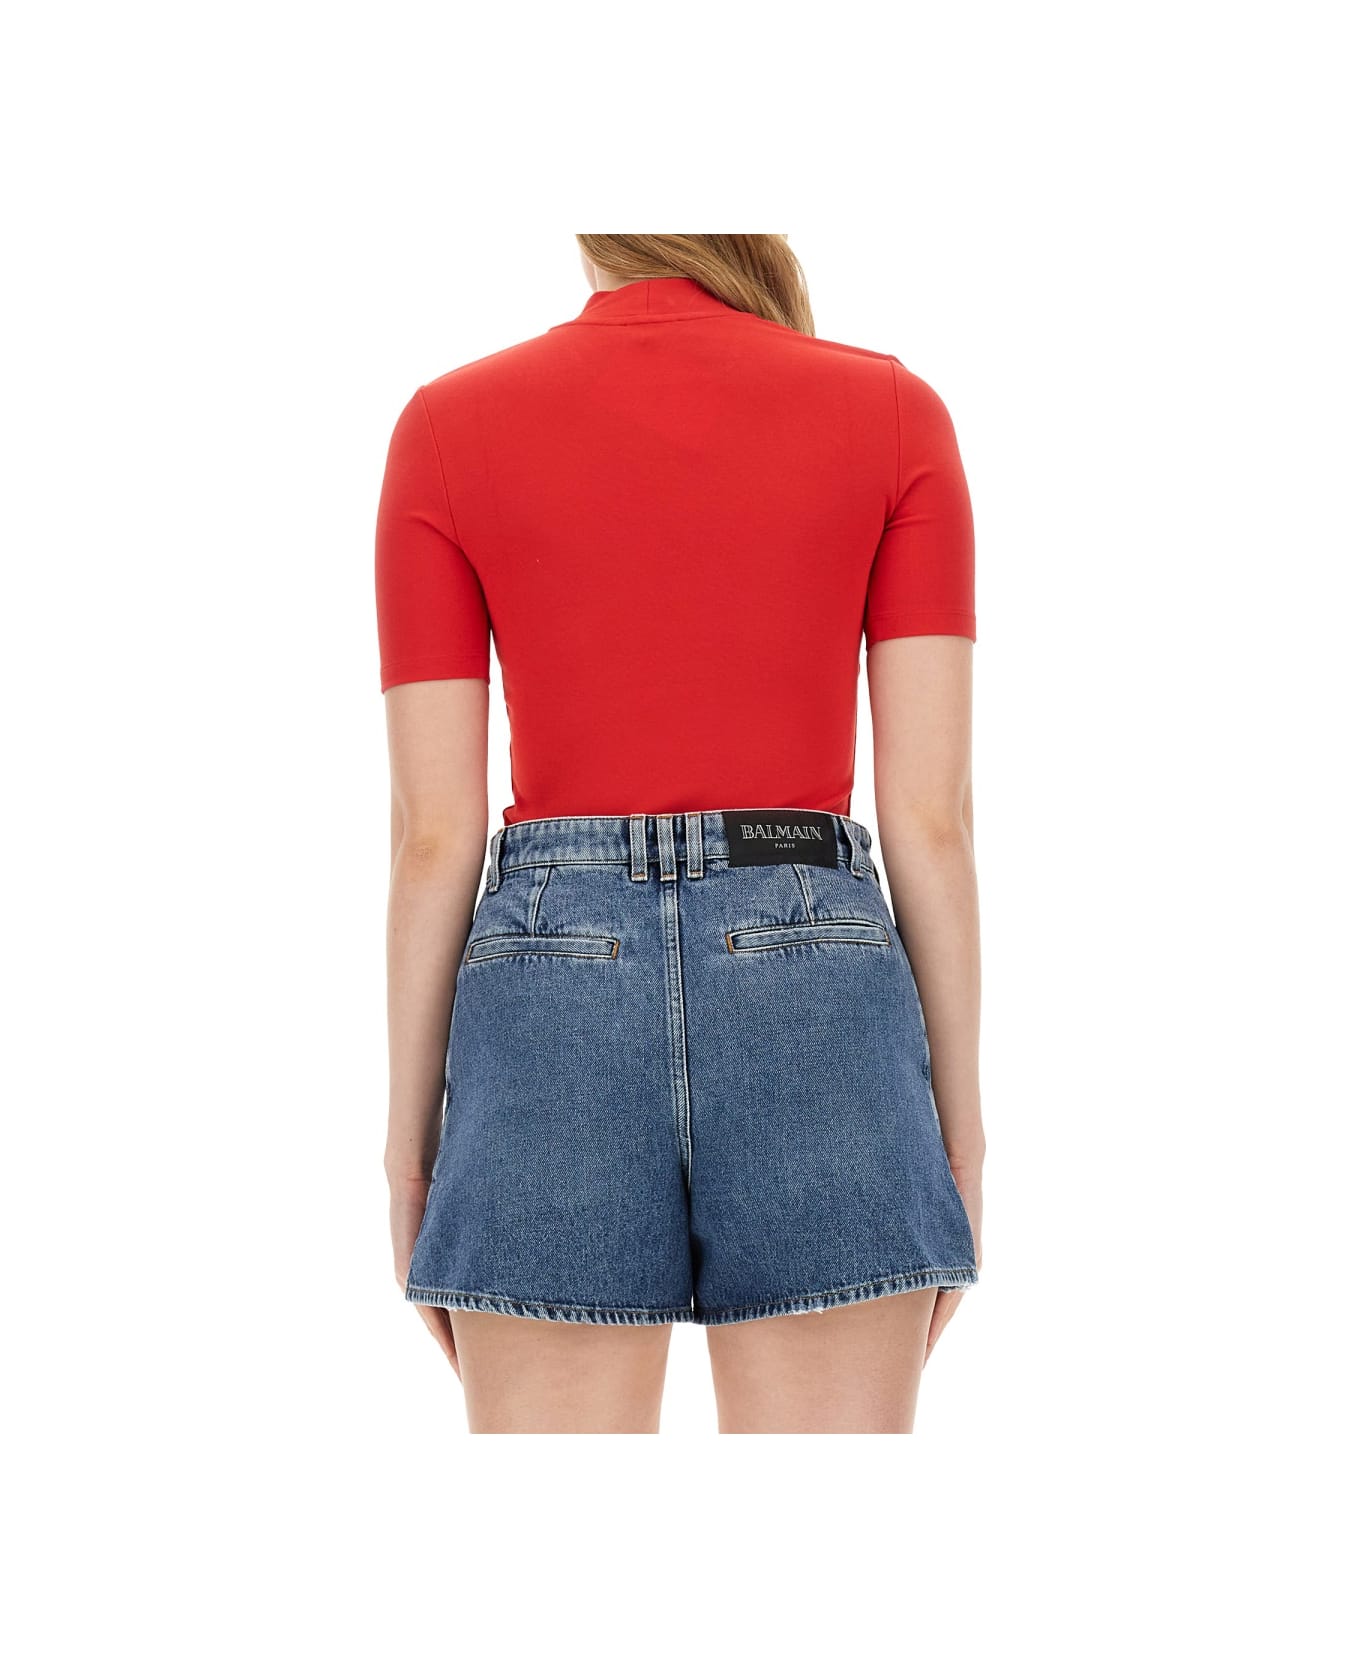 Balmain Slim Fit T-shirt - RED